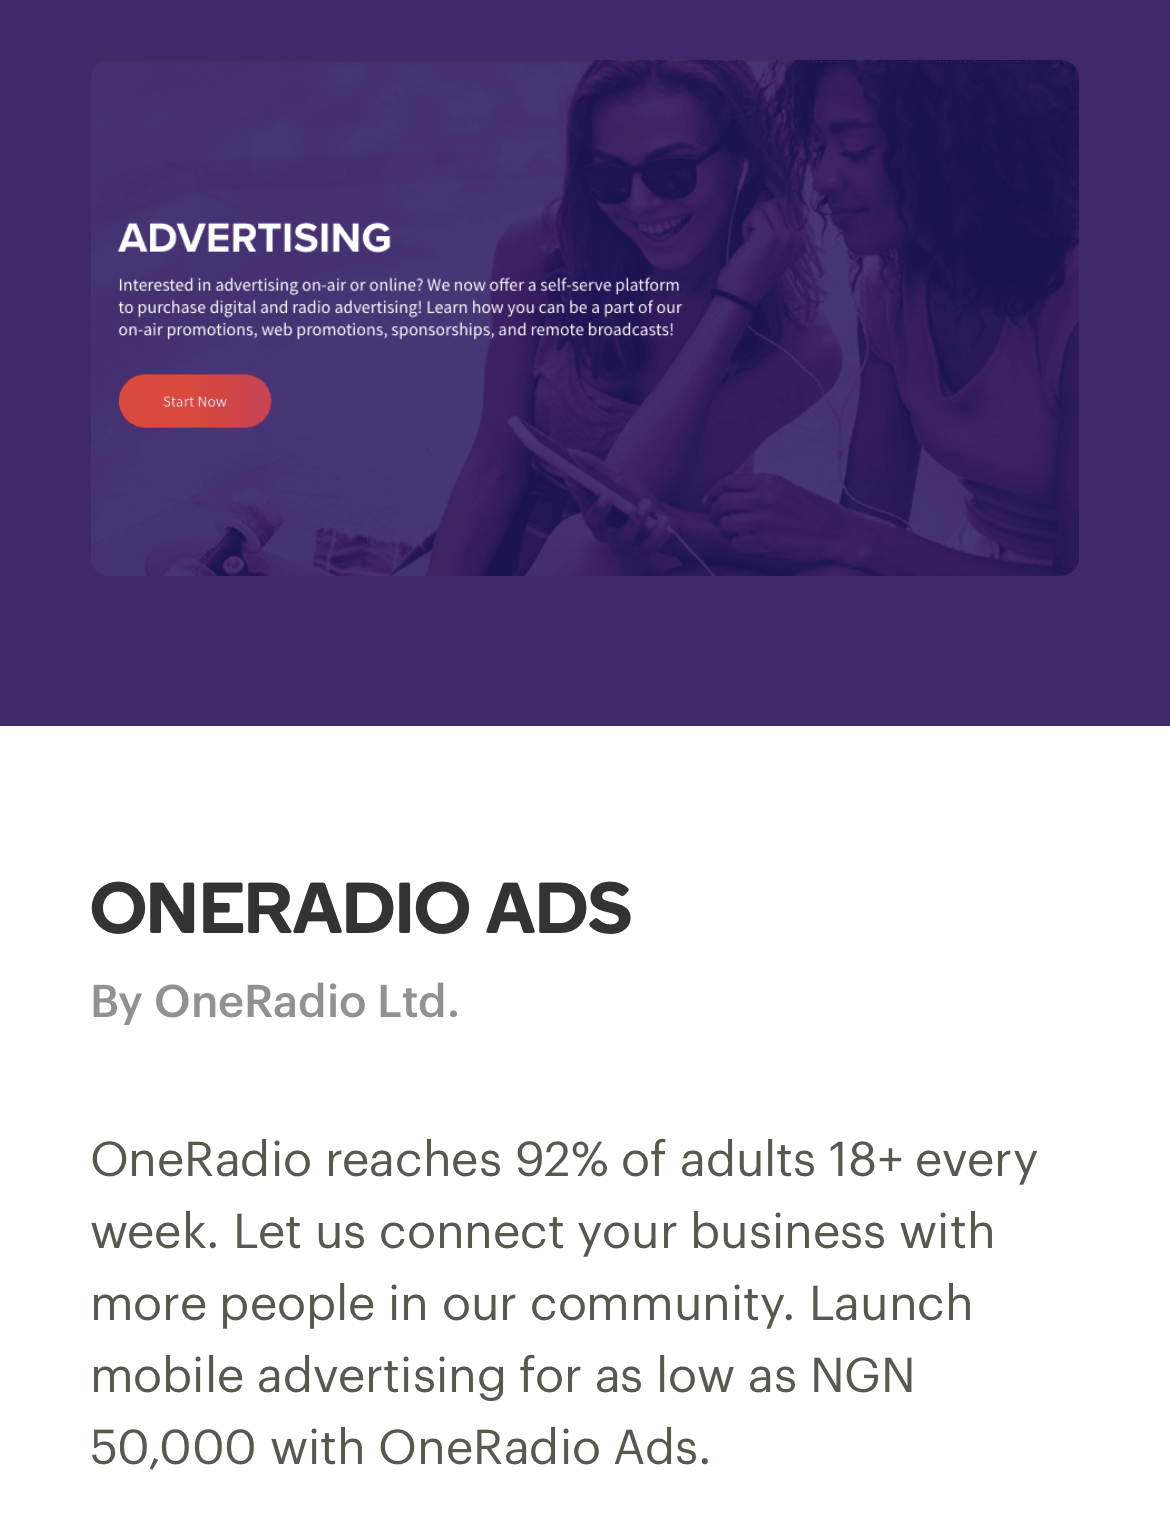 OneRadio Ads